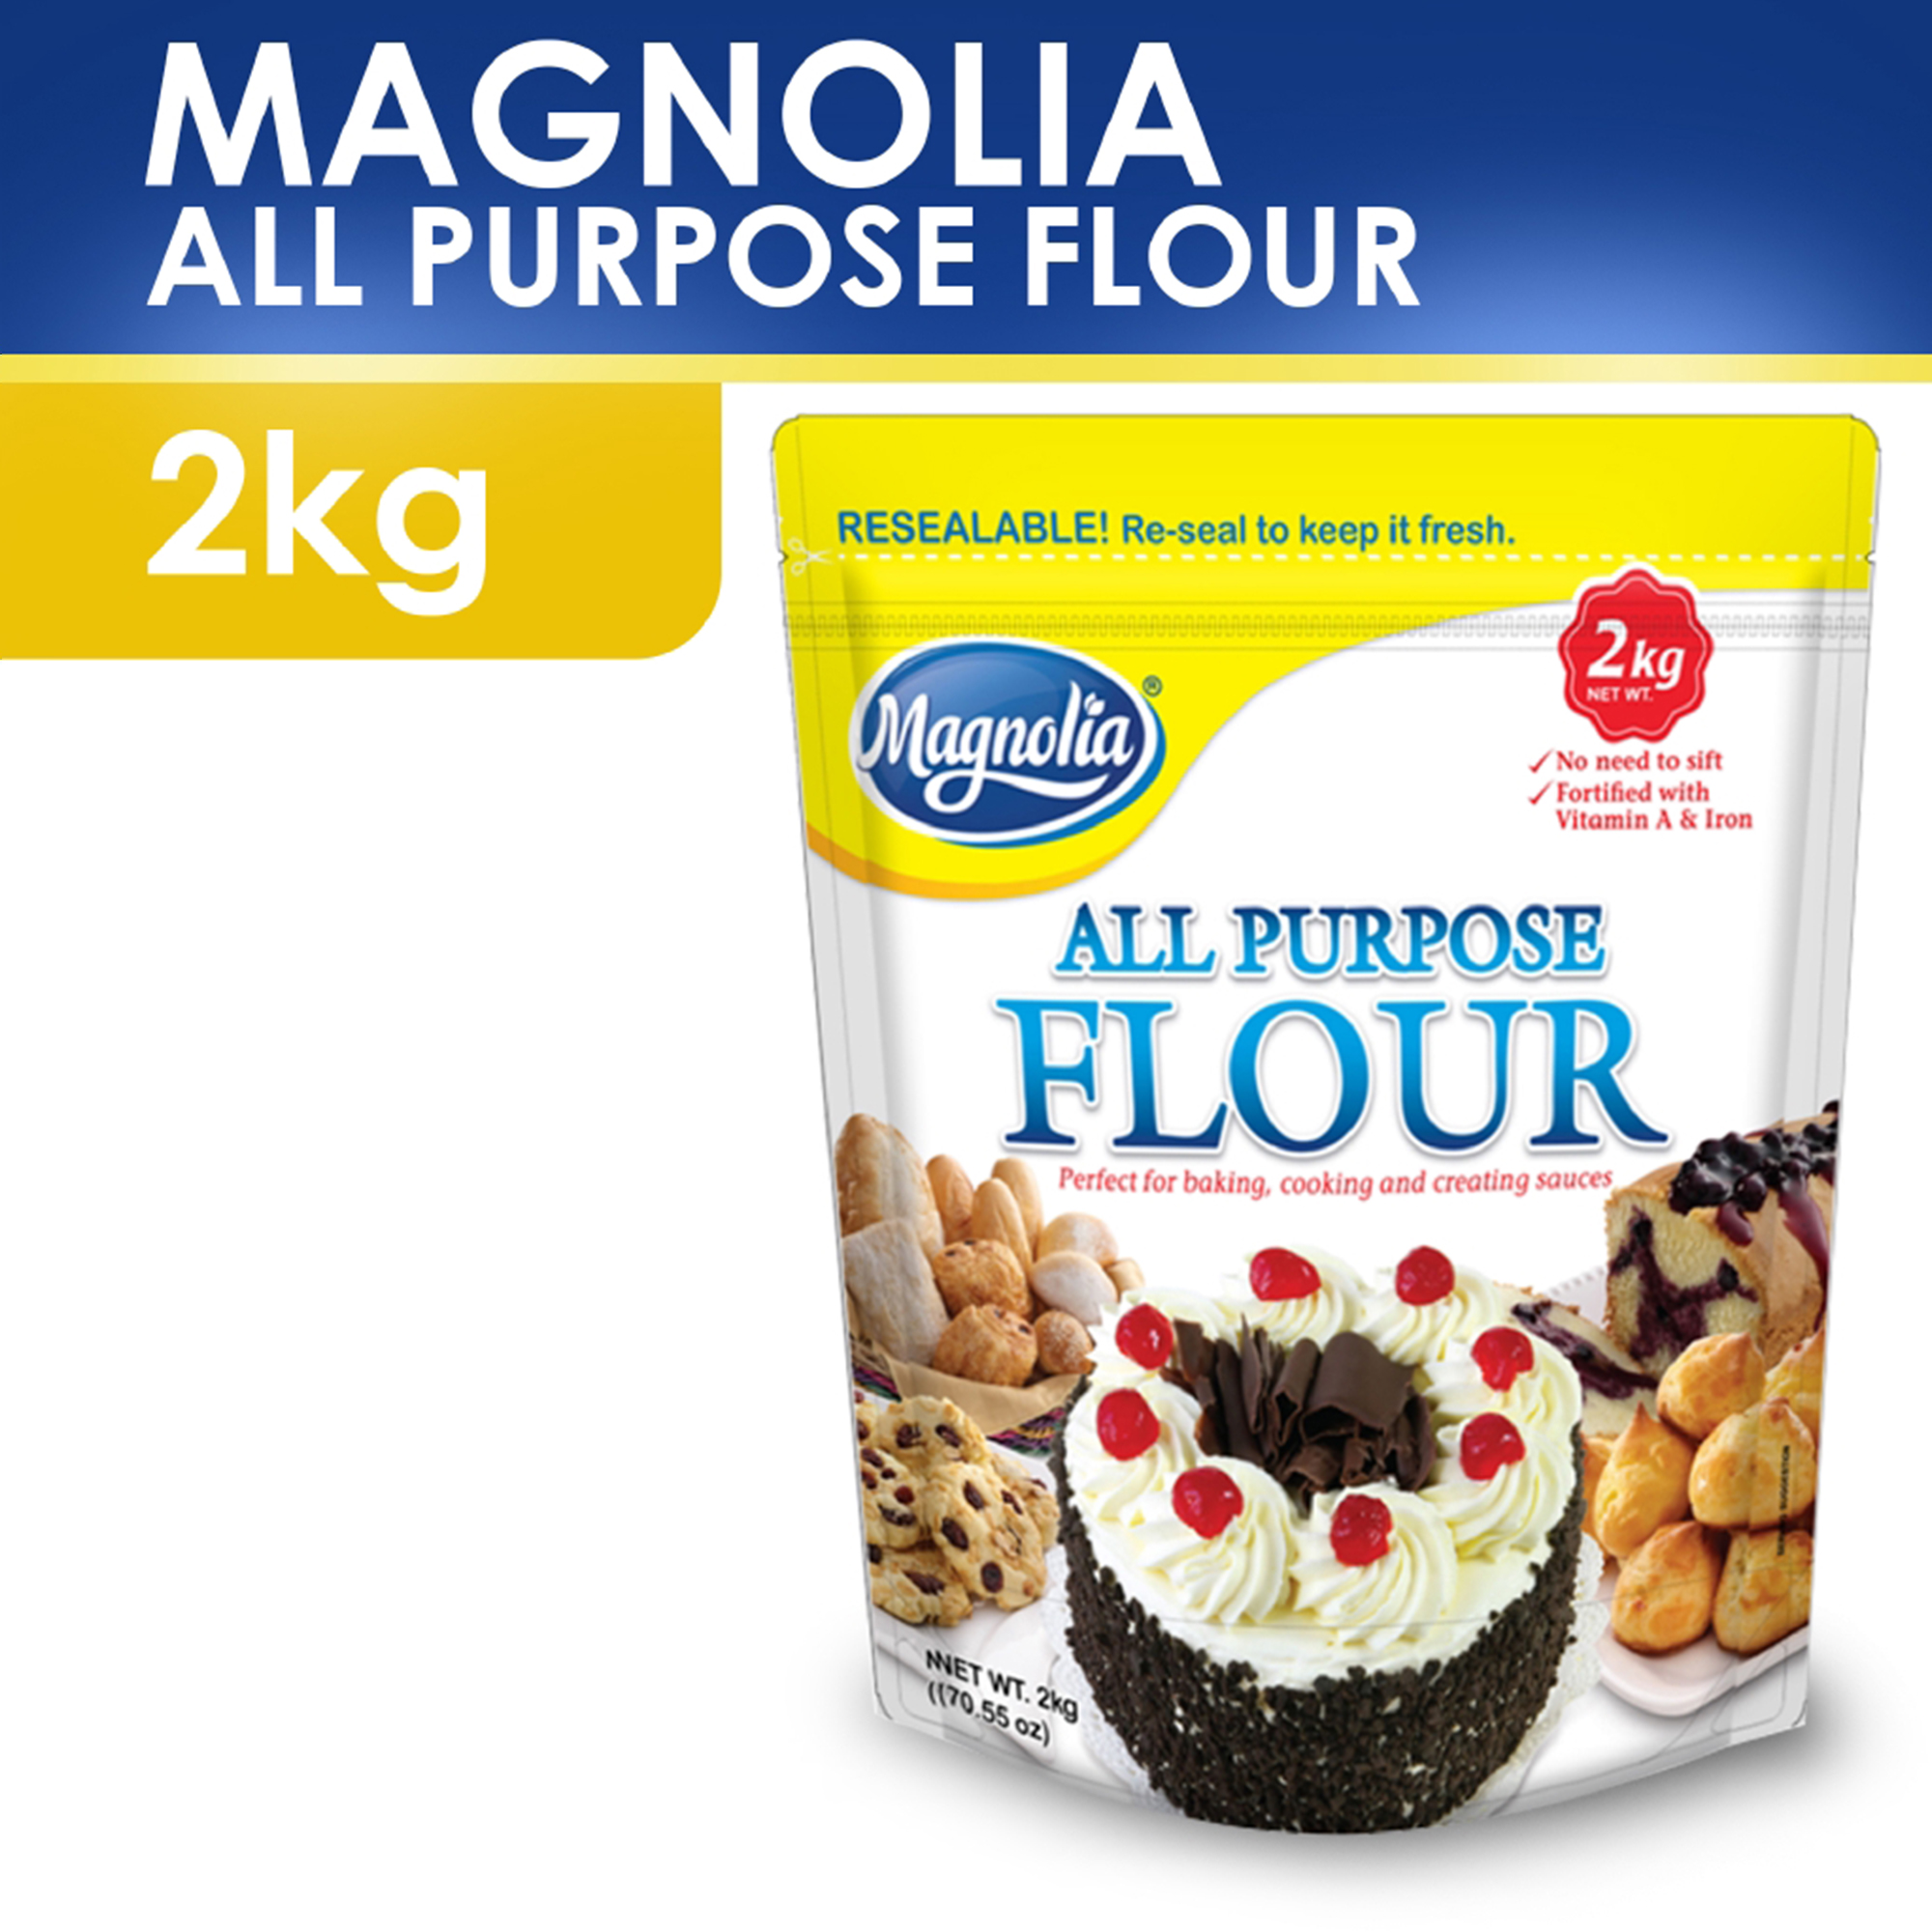 magnolia-all-purpose-flour-2kg-lazada-ph